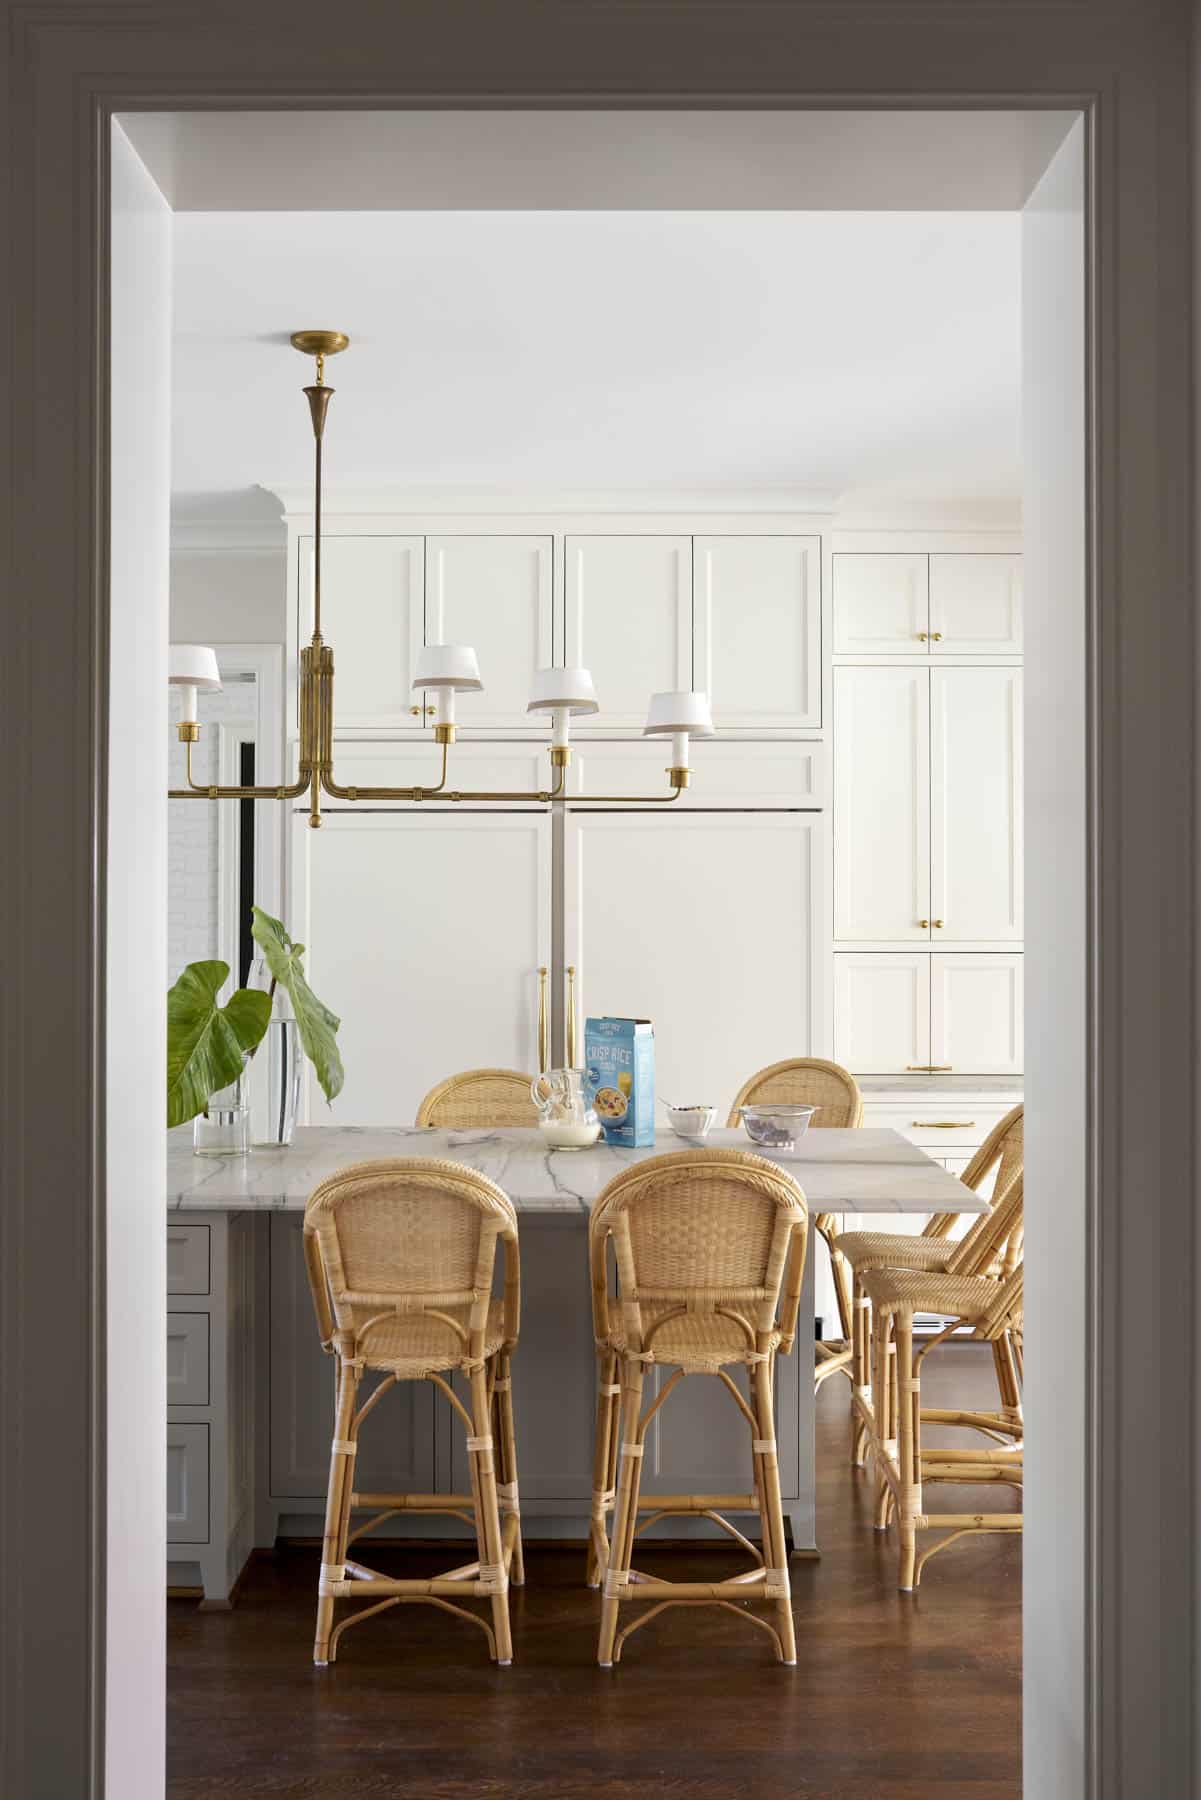 Collins Interiors, Nathan Schroder Photography, kitchen, kitchen design, kitchen remodel, black doo, brass